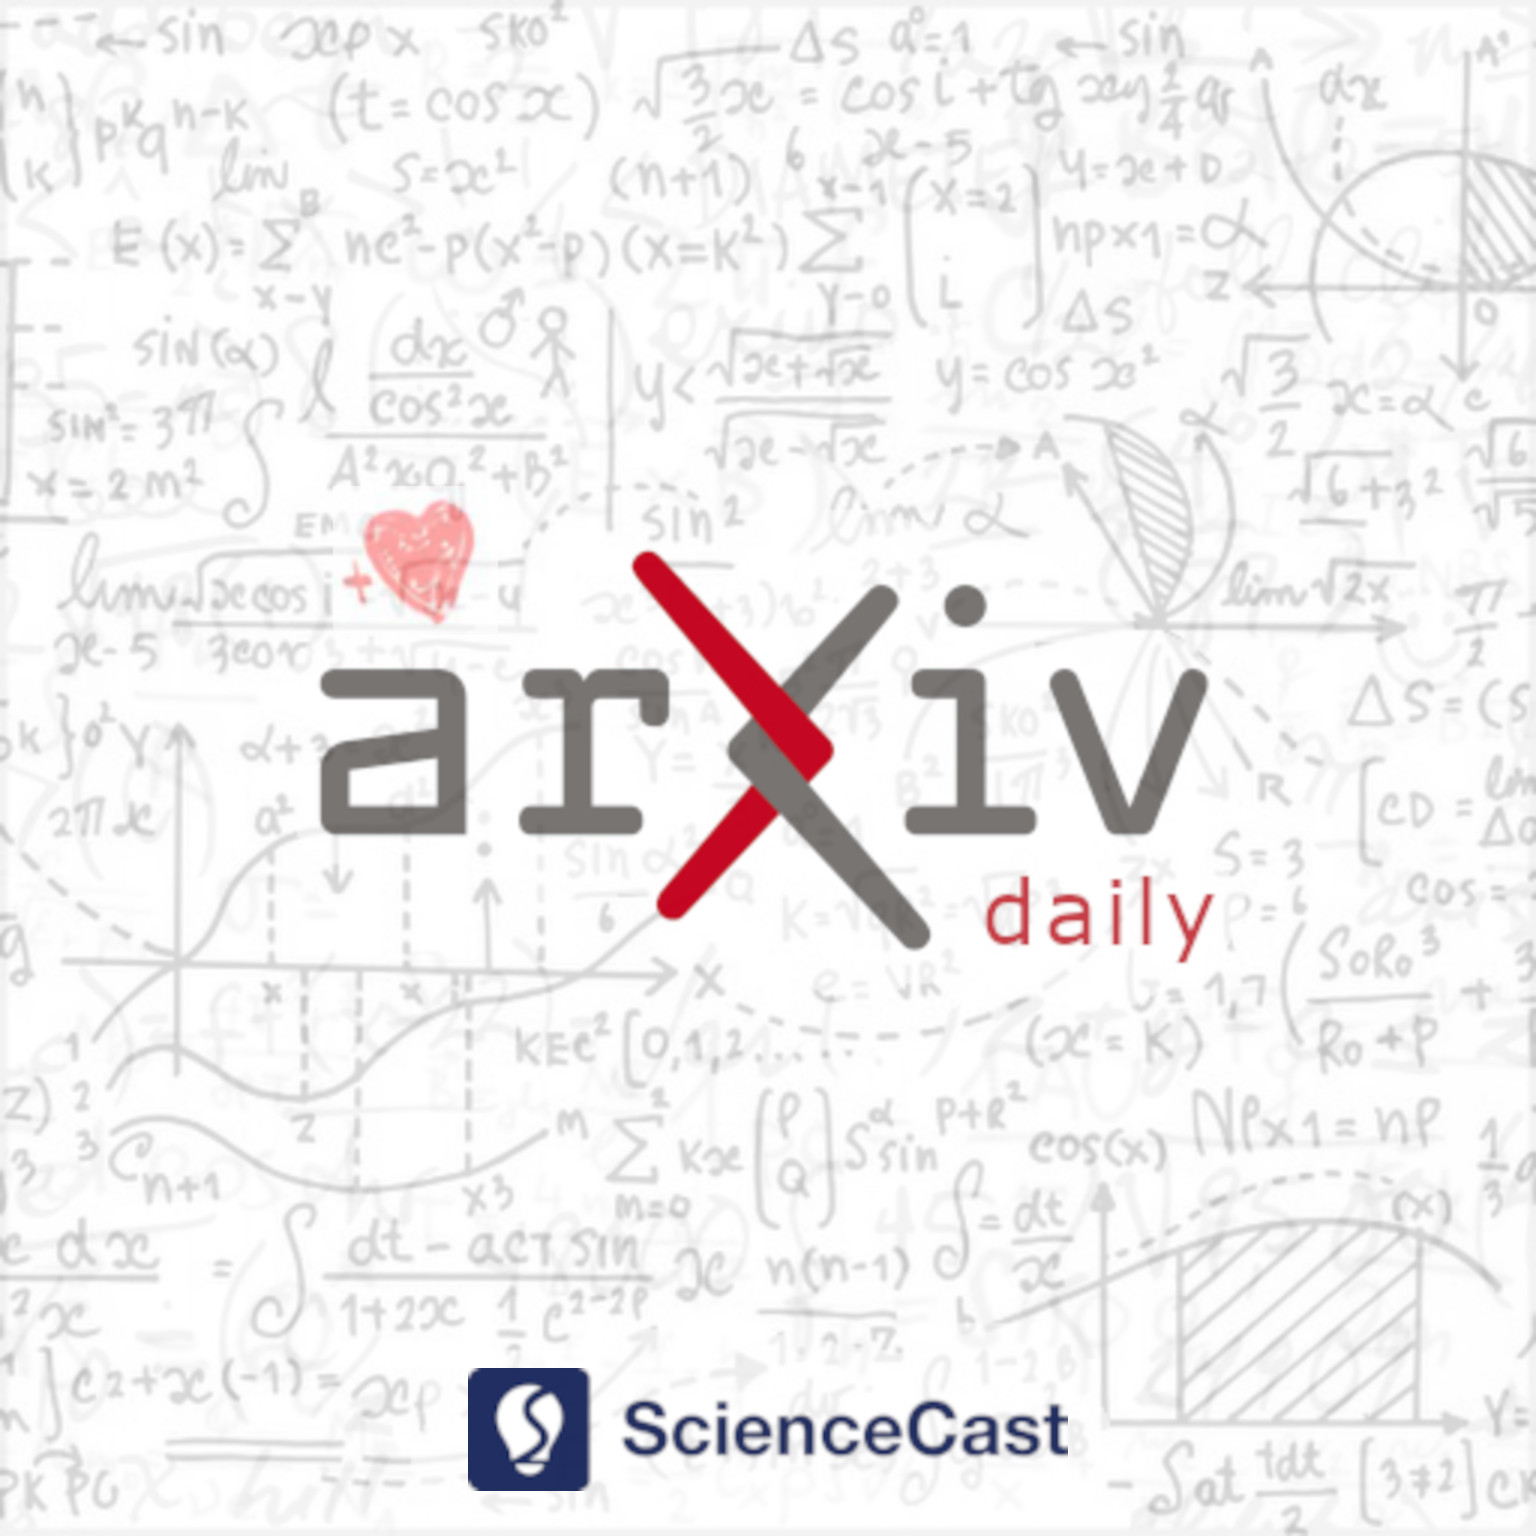 arXiv daily: Combinatorics